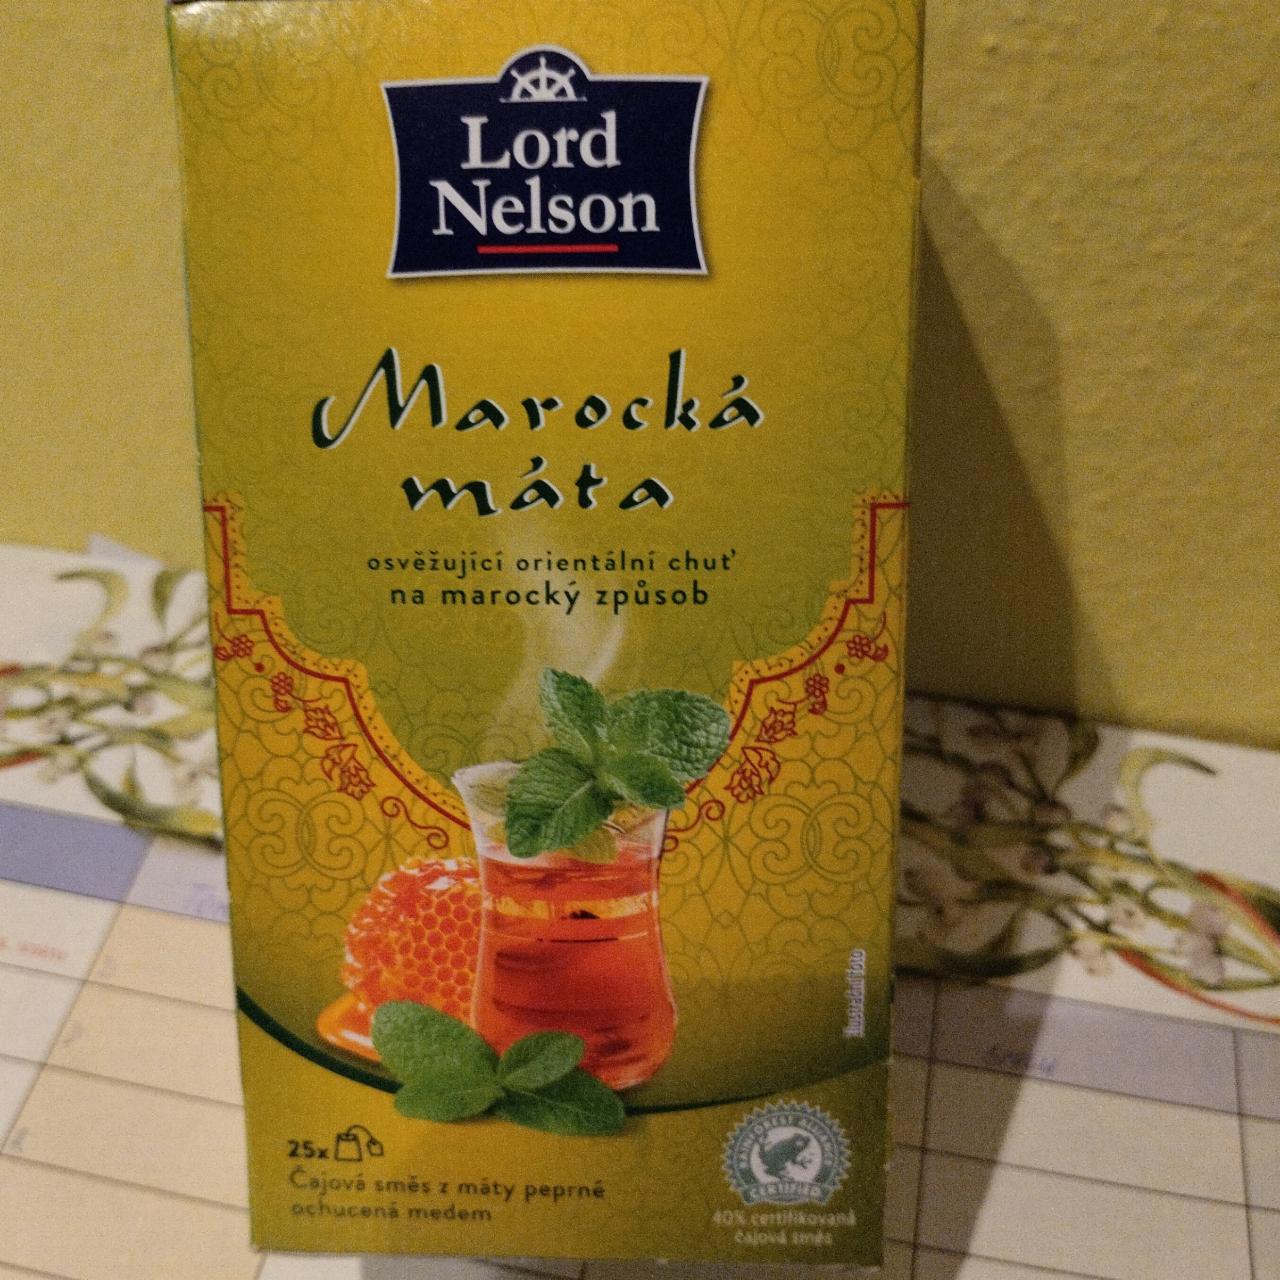 Fotografie - Marocká máta čajová směs Lord Nelson